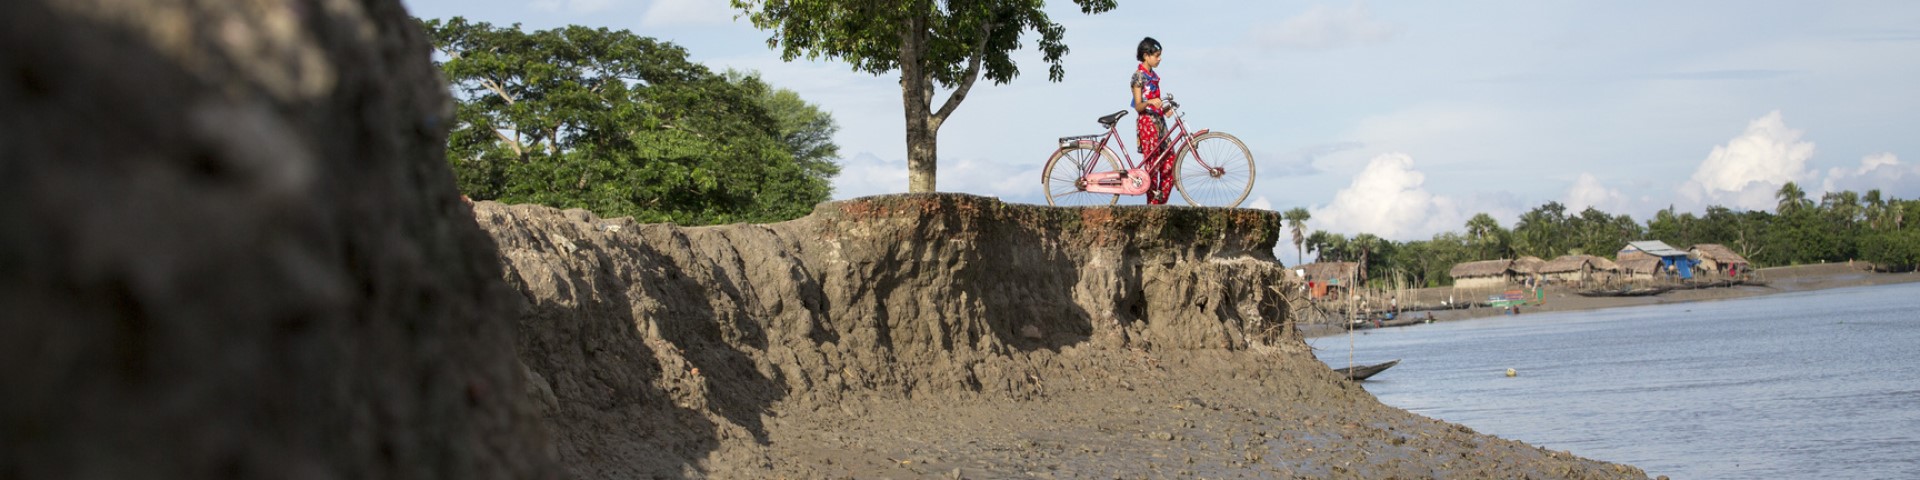 Eine Person steht mit ihrem Fahrrad an einem Flussufer, das von Erosion betroffen ist.